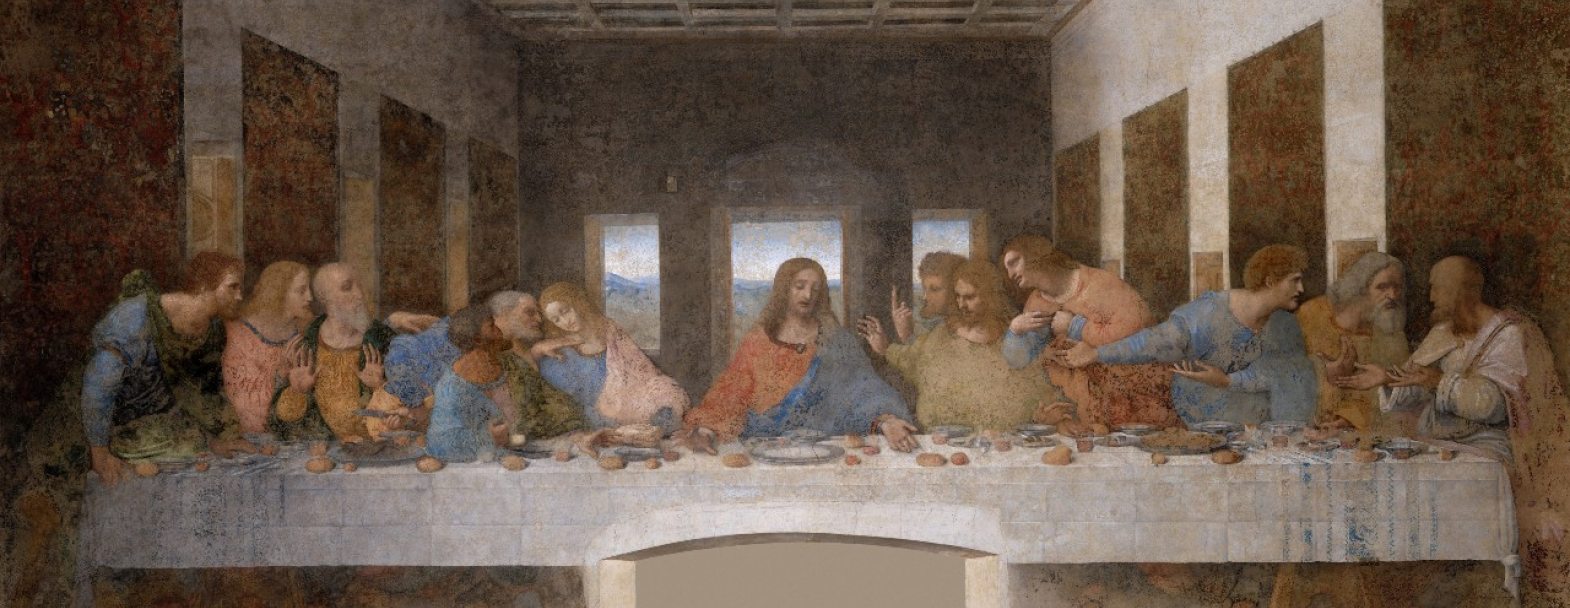 La Cène de Léonard de Vinci est une peinture murale de 4m60 sur 8m80 réalisée de 1495 à 1498 pour le réfectoire du couvent dominicain de Santa Maria delle Grazie à Milan. / ©LDD